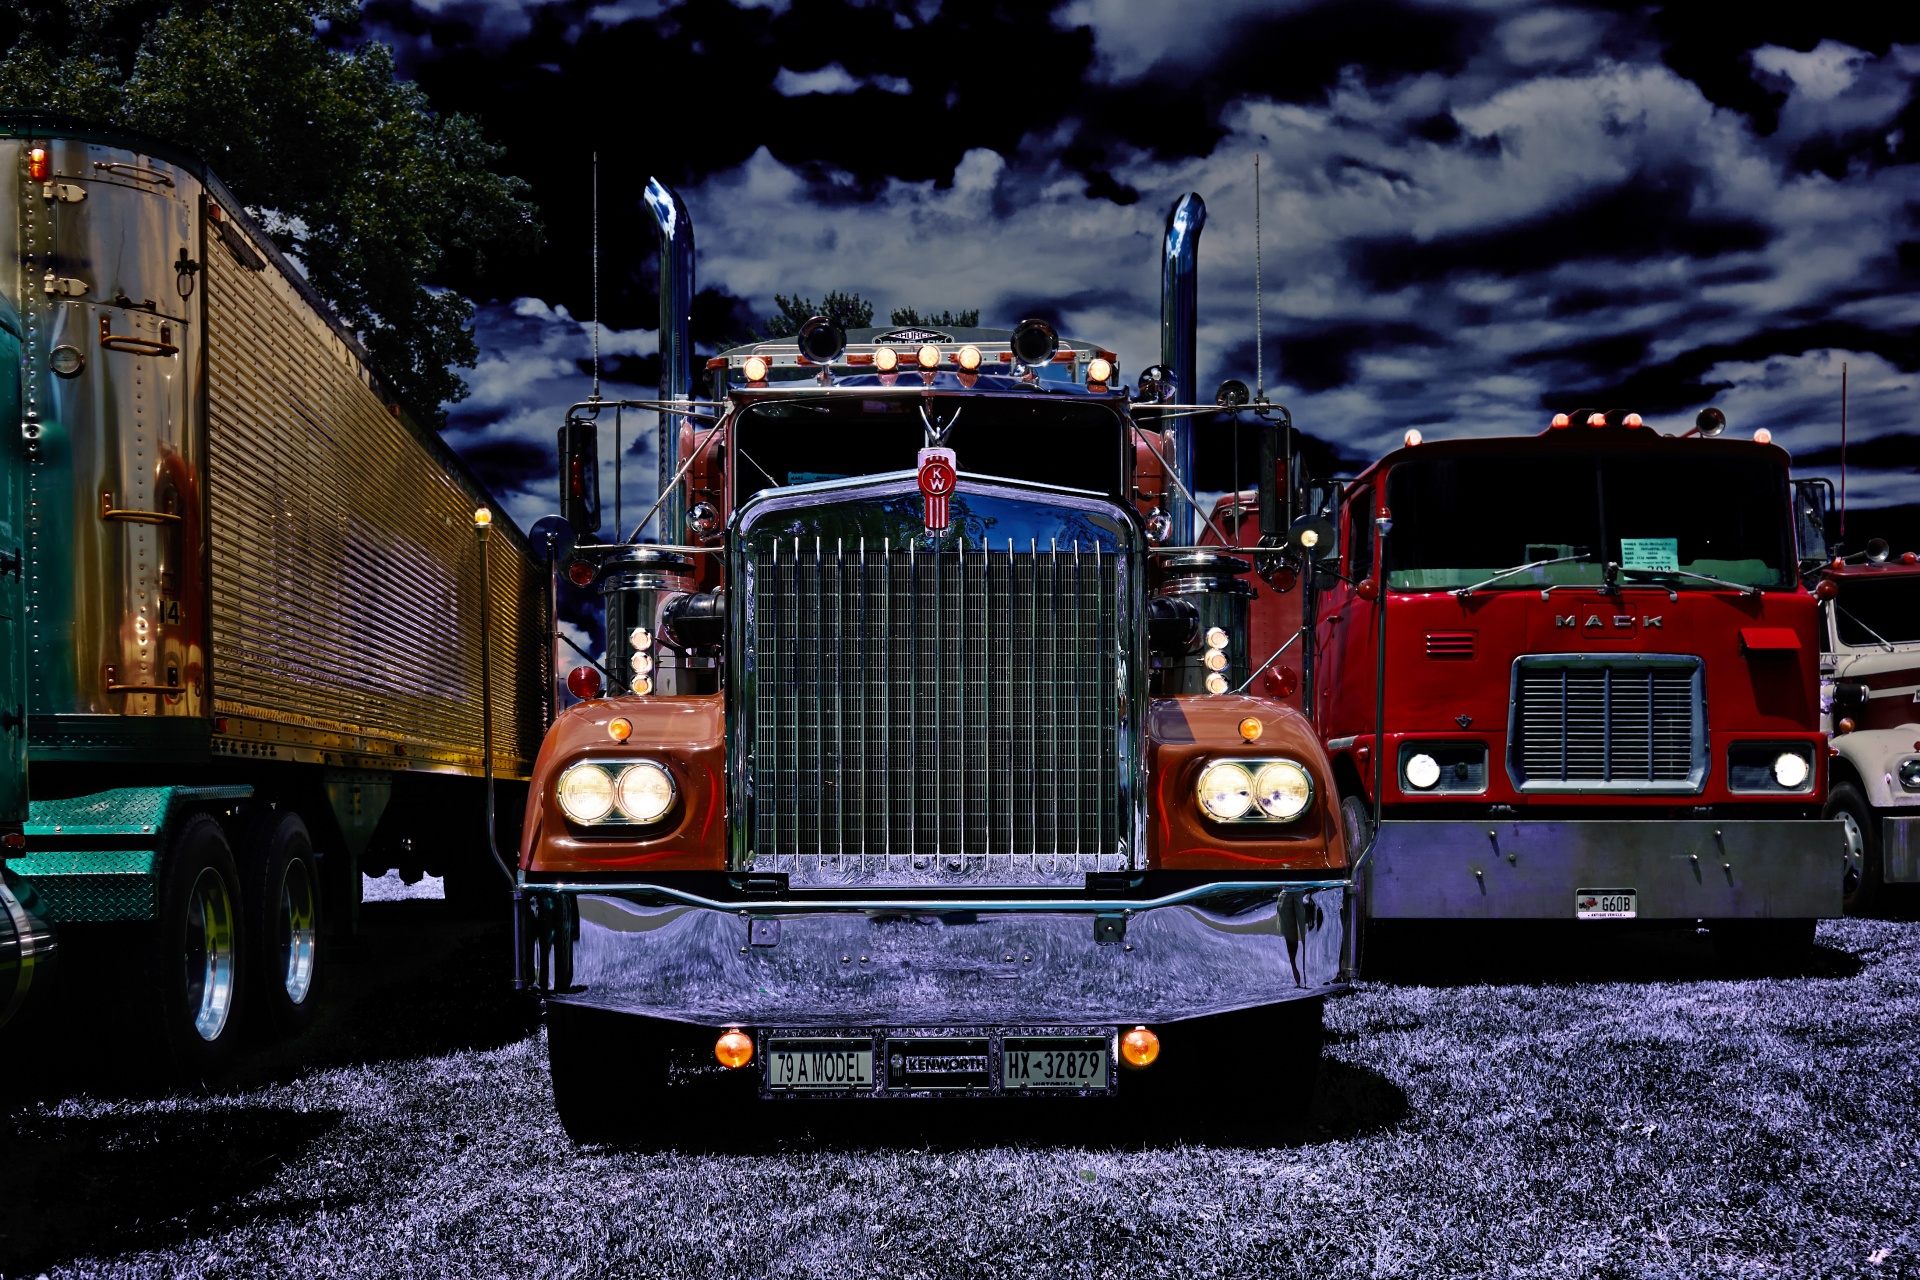 Sunkvežimis,  Sunkvežimiai,  Automobilis,  Kroviniai,  Kenworth,  1979,  Didelis,  Įrenginys,  Vairuoti,  Kelias